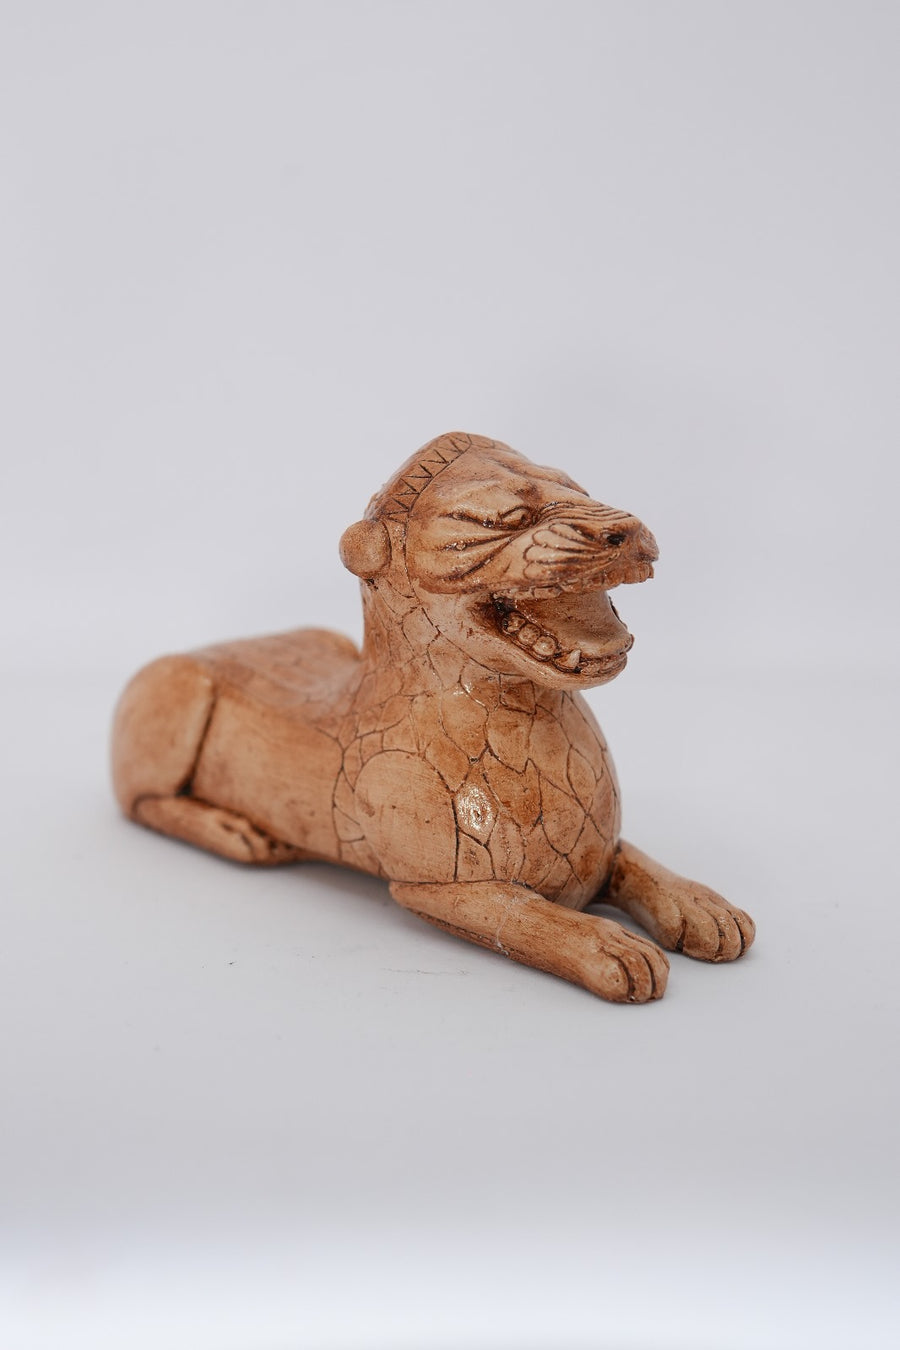 El yapımı Urartu Aslanı figürü, Anadolu'nun kadim Urartu Krallığı'nın koruyucu ve kutsal sembolü olan aslana detaylı işçilik ve yüksek kaliteli malzemelerle hayat veriyor.